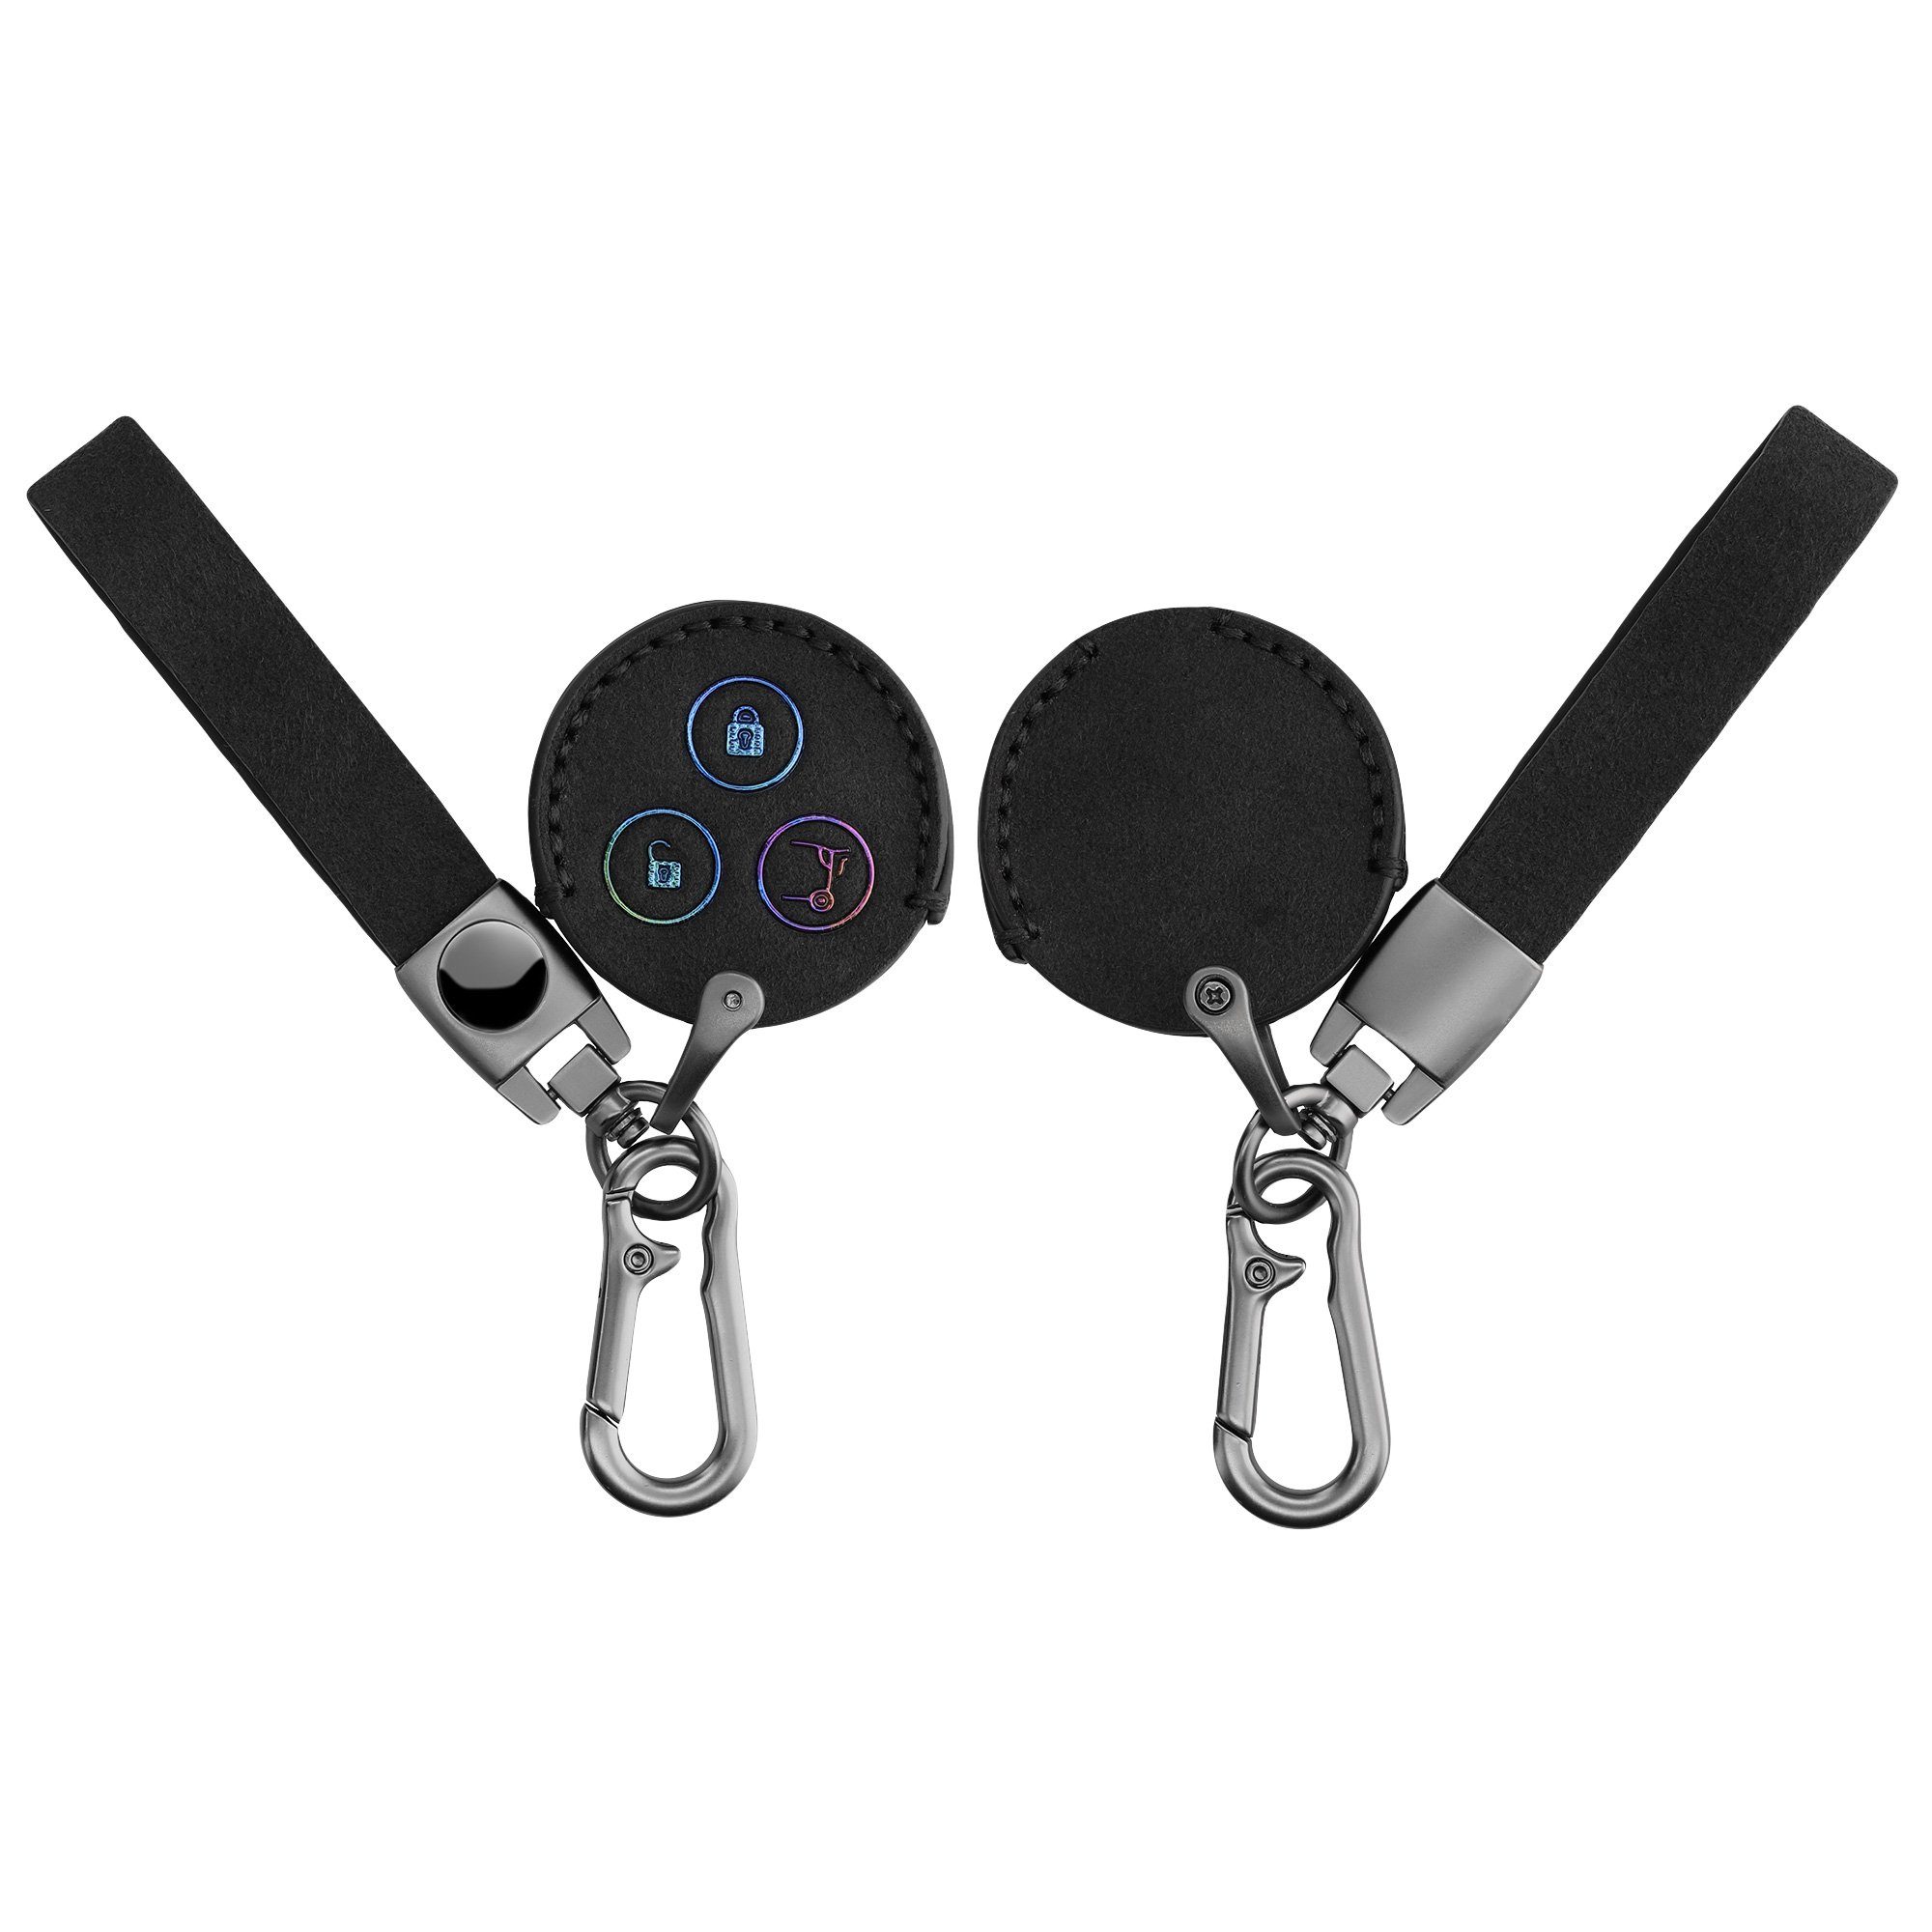 Angebot aussprechen kwmobile Schlüsseltasche Autoschlüssel Schlüssel Case Kunstleder für 3-Tasten Cover Smart Schlüsselhülle Funk Autoschlüssel, Hülle